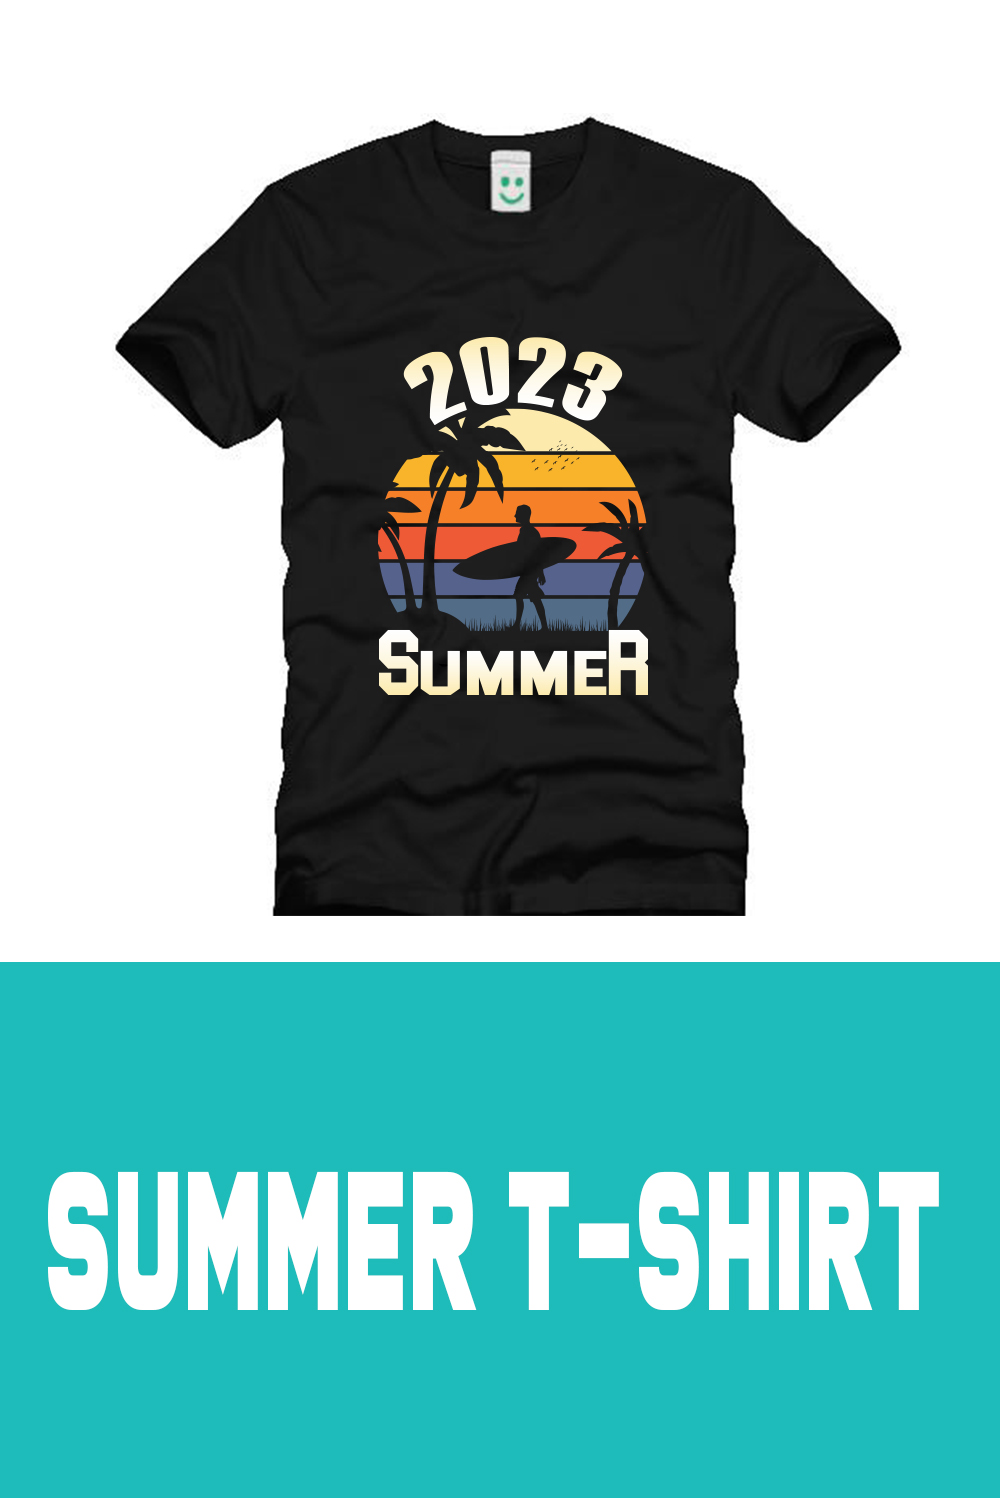 T-Shirt Summer Design pinterest image.